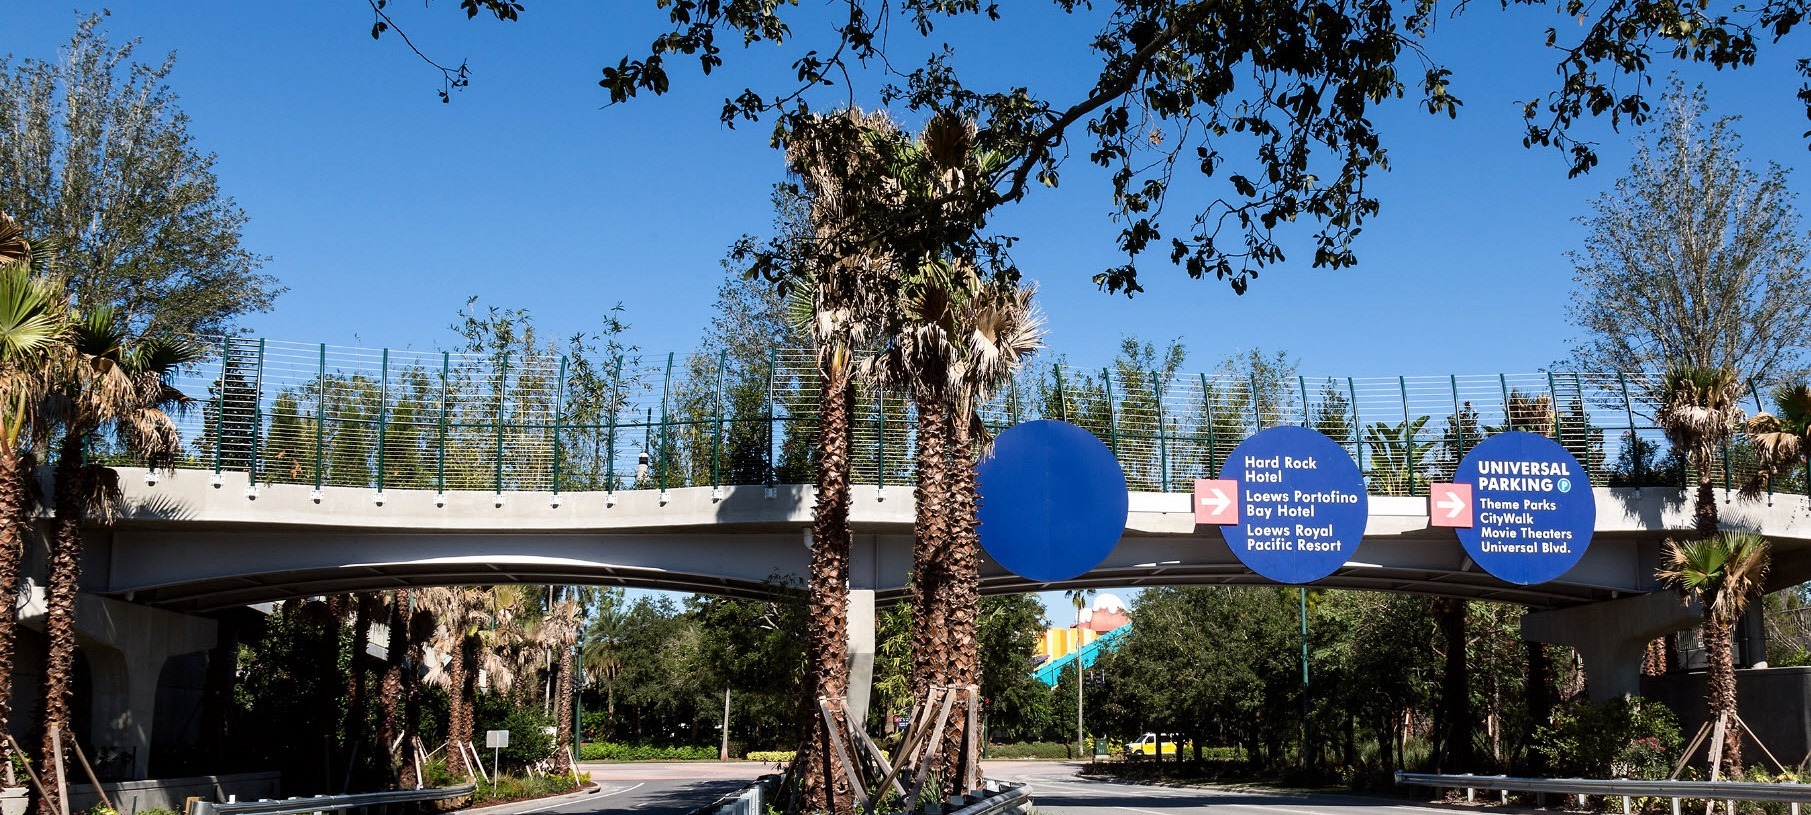 Universal Studios Orlando Flyover Pedestrian Bridge